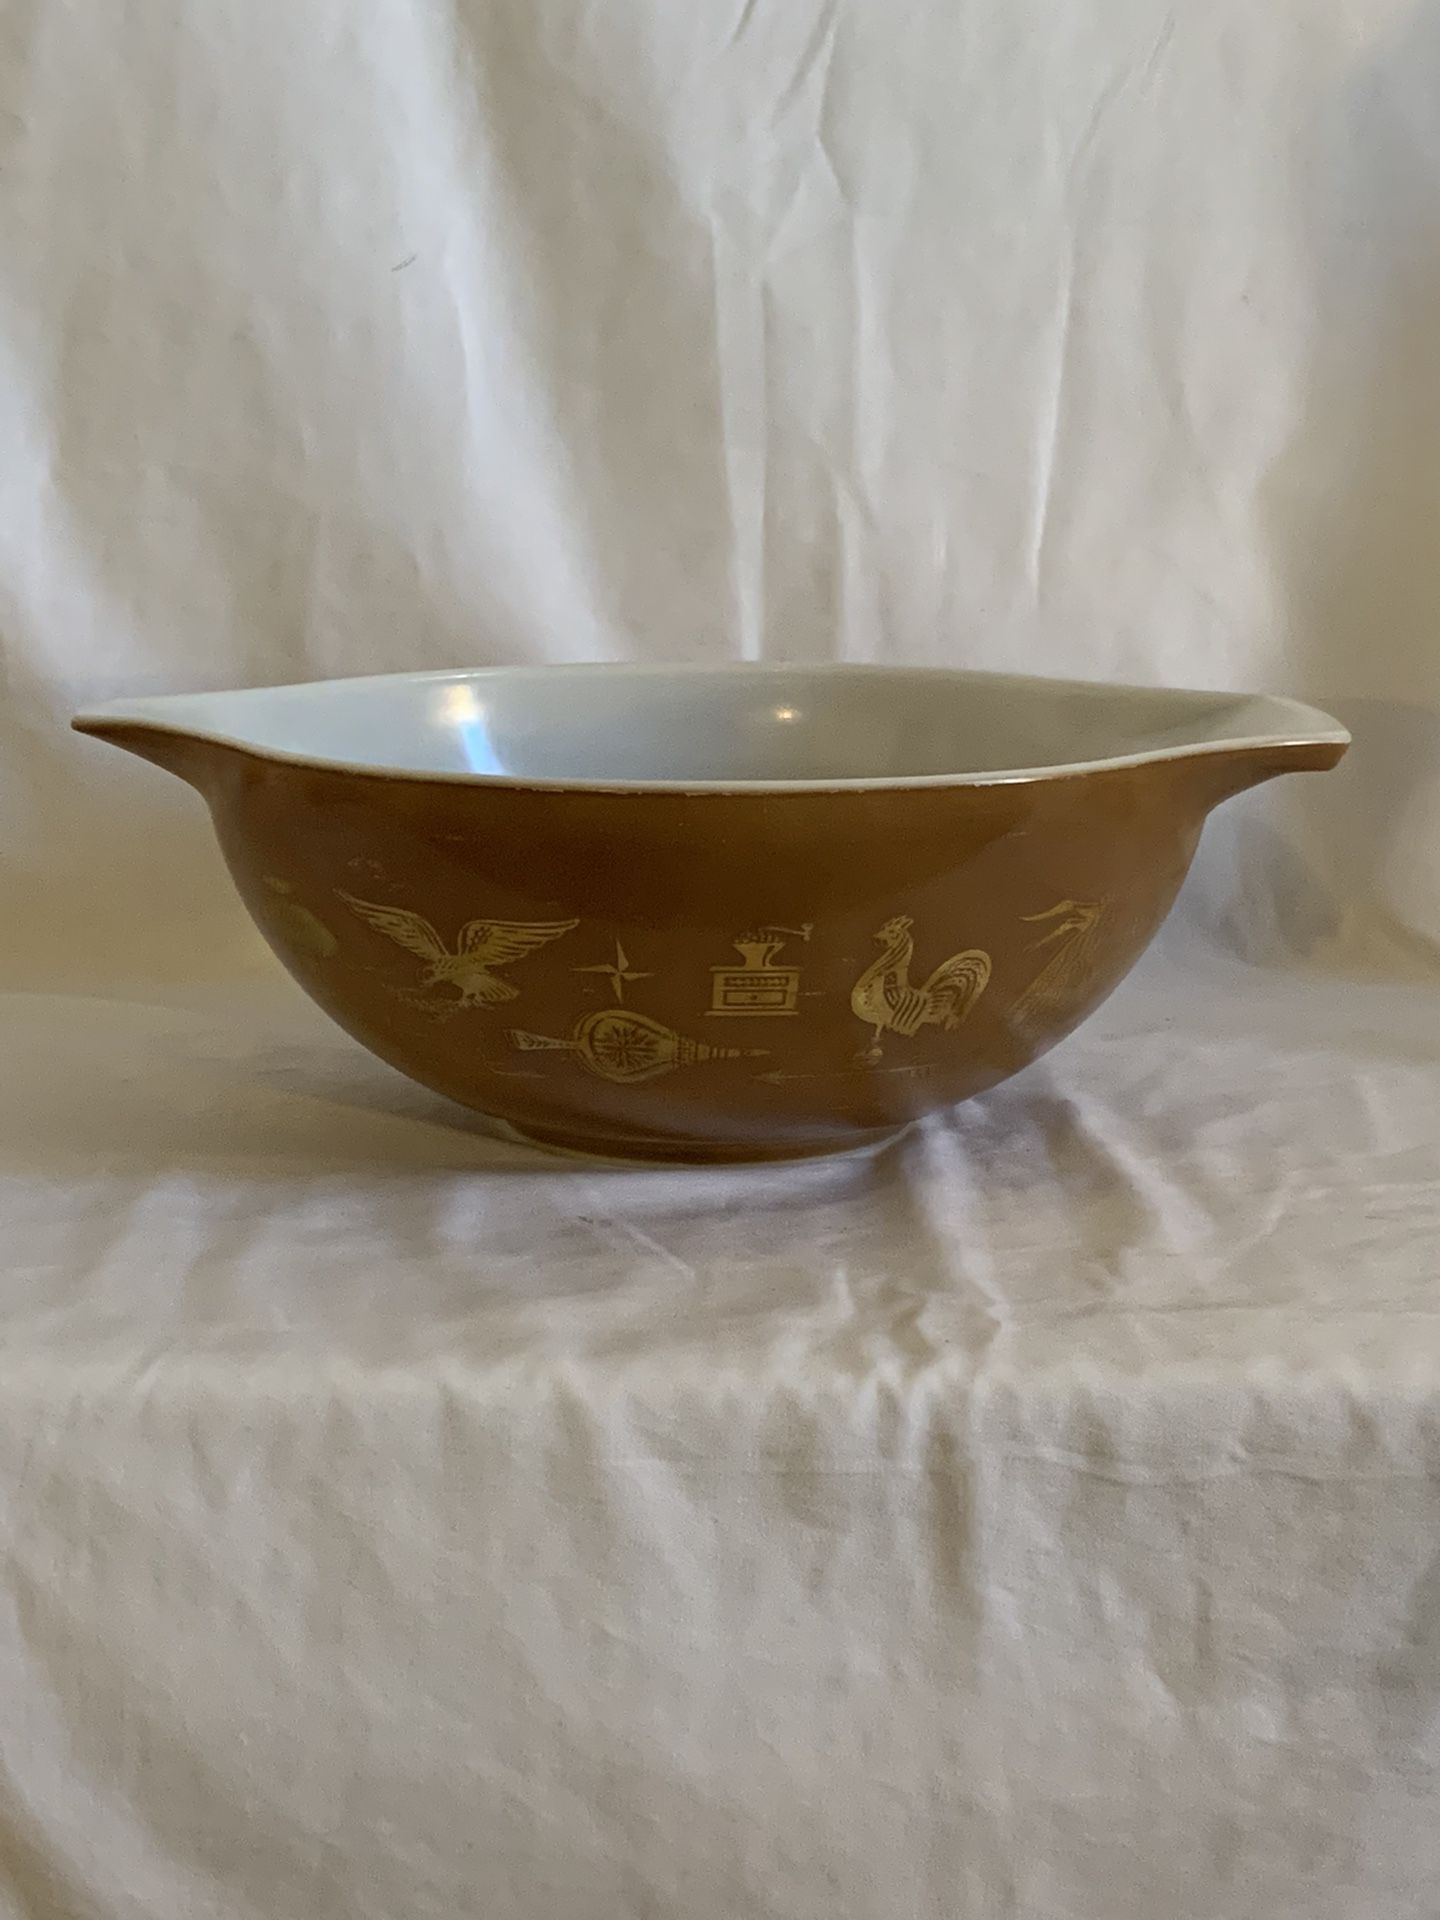 Vintage Pyrex Glass Bowl